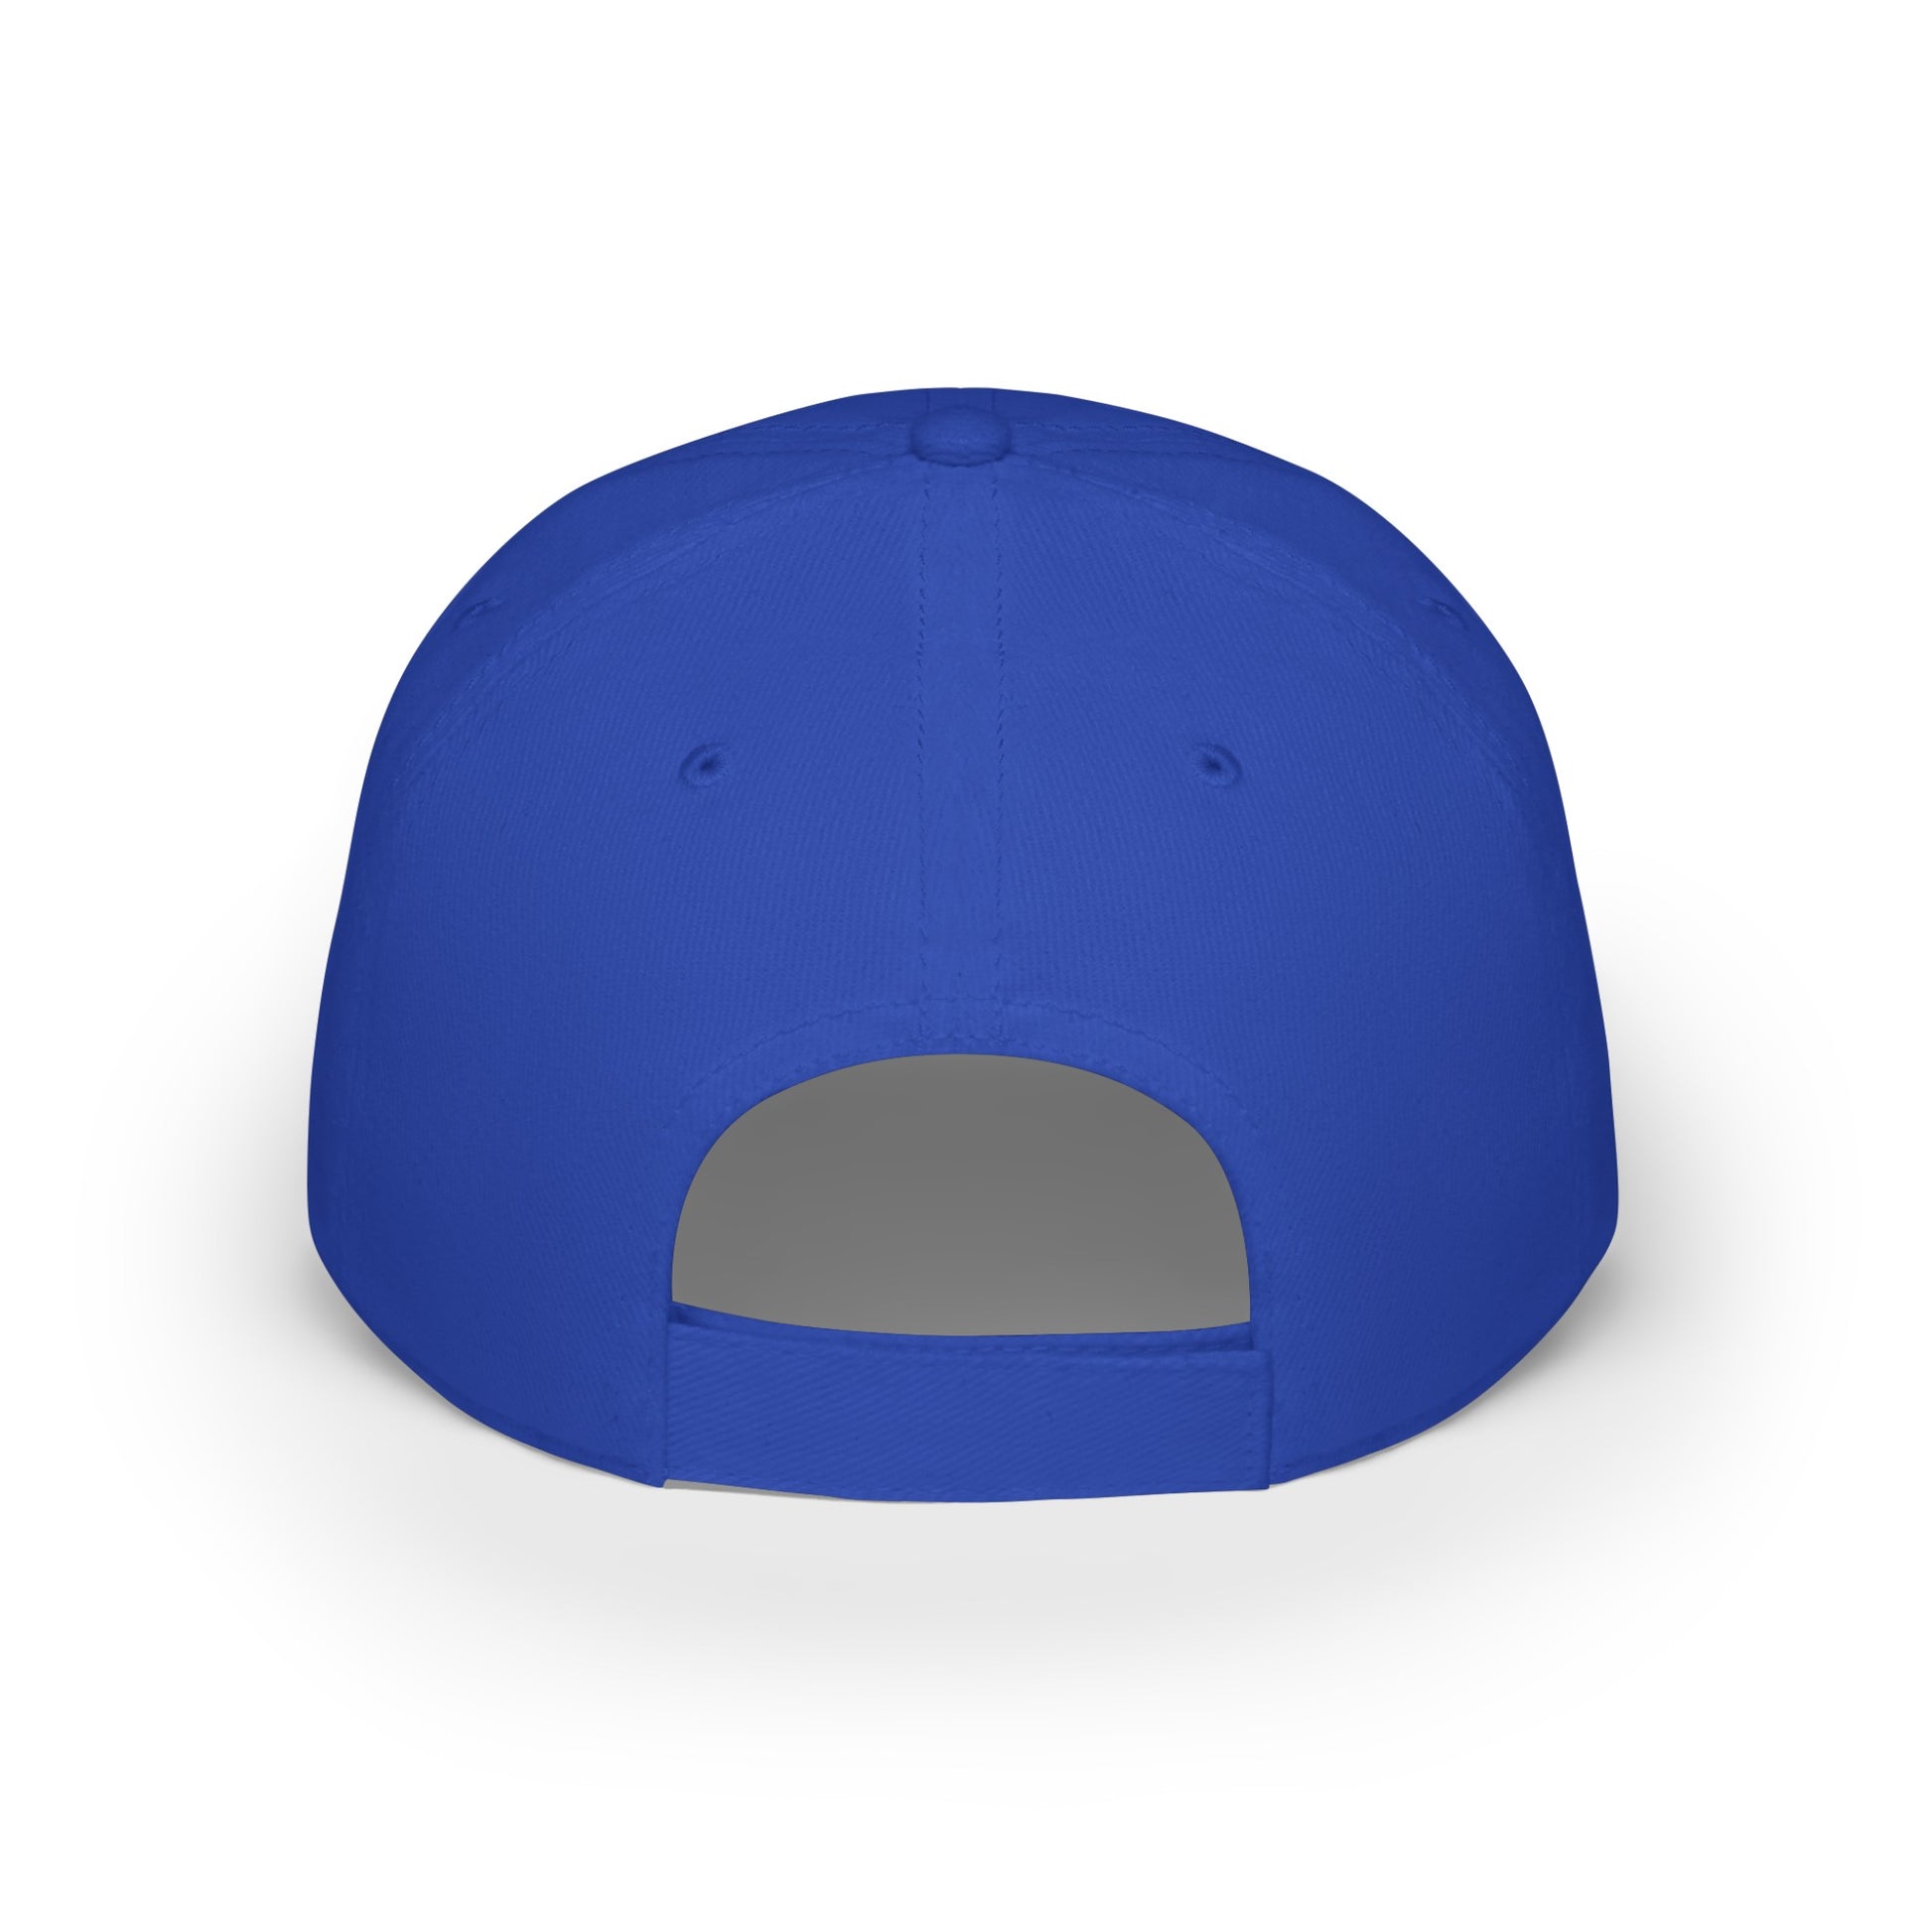 MDBTDJ#BRGC - Low Profile Baseball Cap Tattooed Dj's Limited Edition, Hats, Tattooed Djs Shop